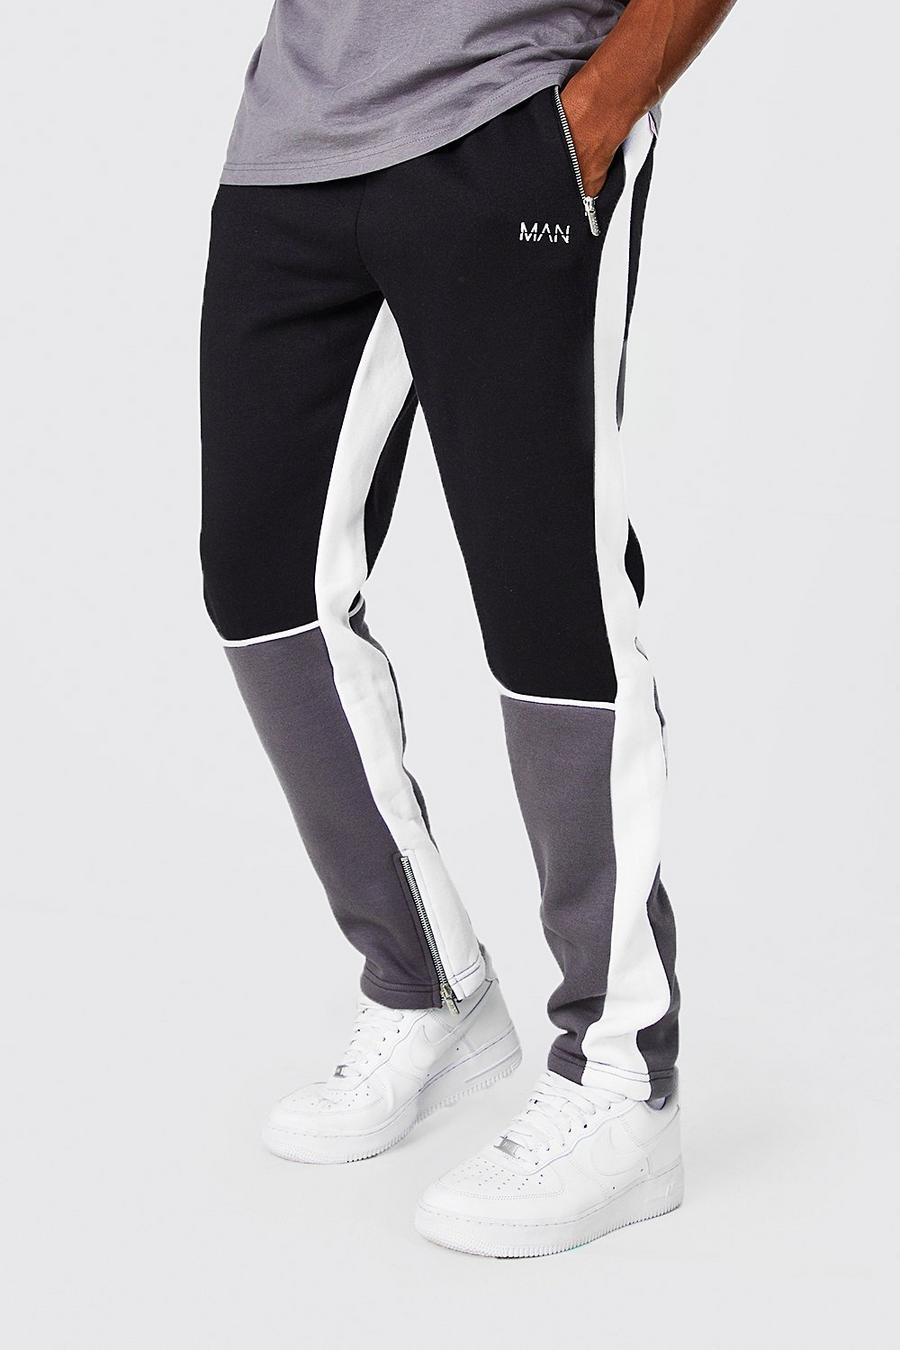 Pantalón deportivo MAN Original pitillo con colores en bloque, Black negro image number 1